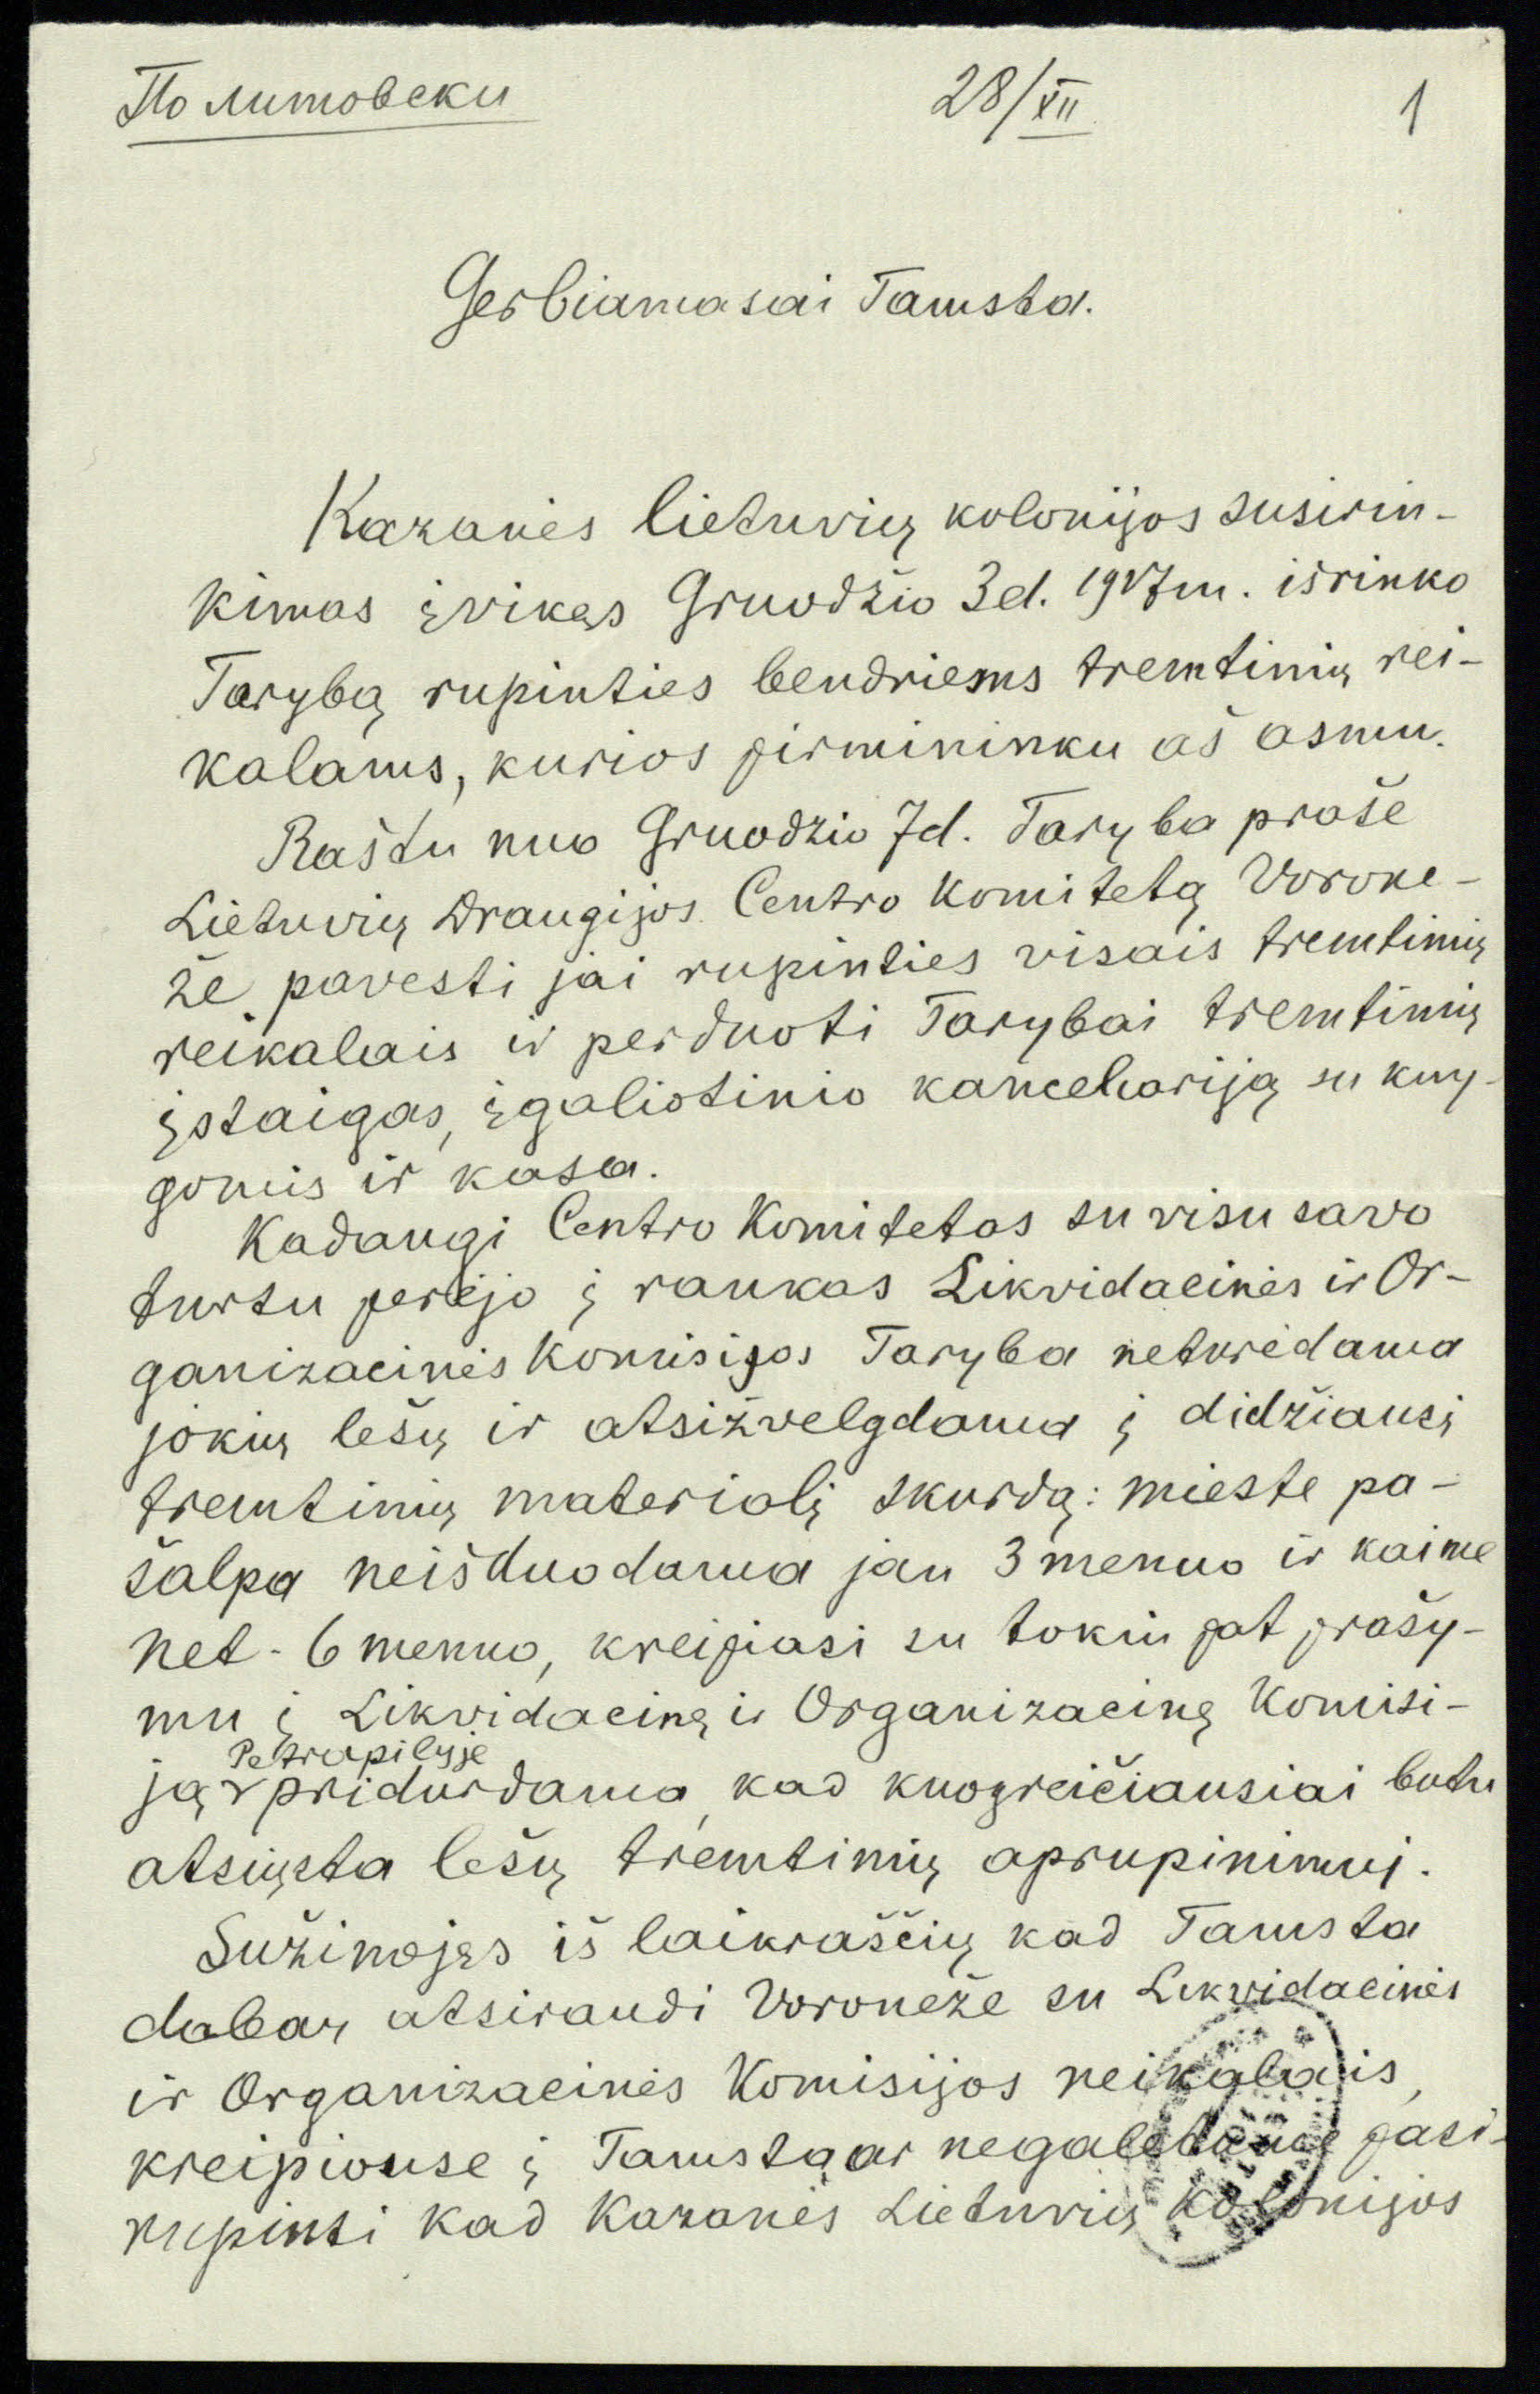 Kazanės lietuvių tarybos pirmininko V. Dumbrio laiškas Vladui Požėlai